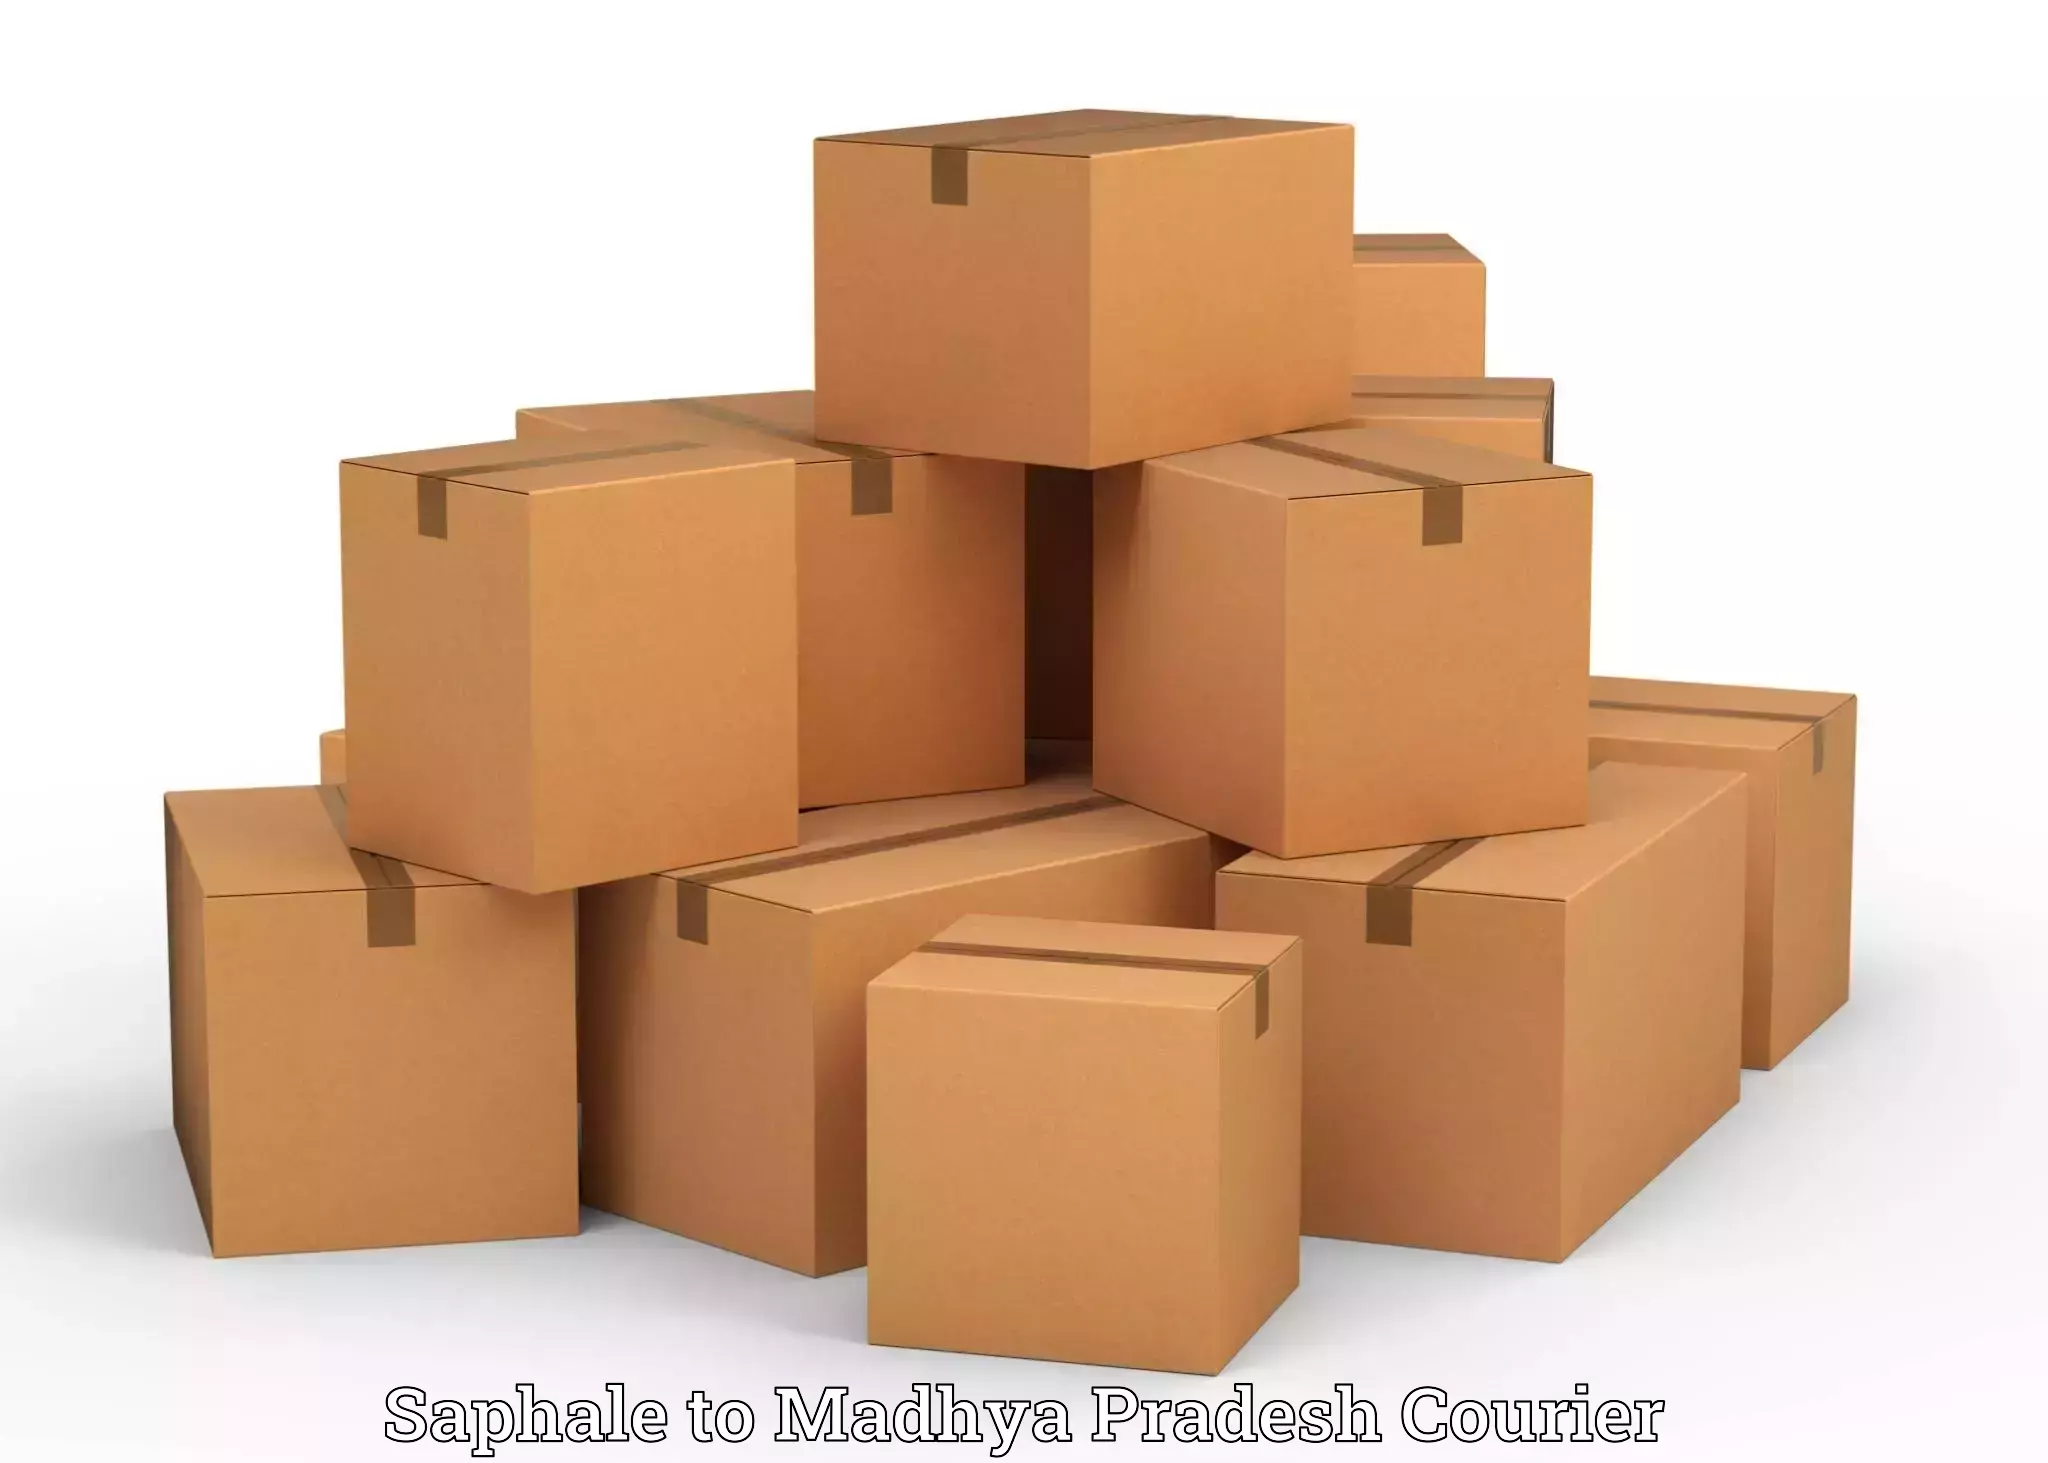 Luggage shipment strategy Saphale to Kesali